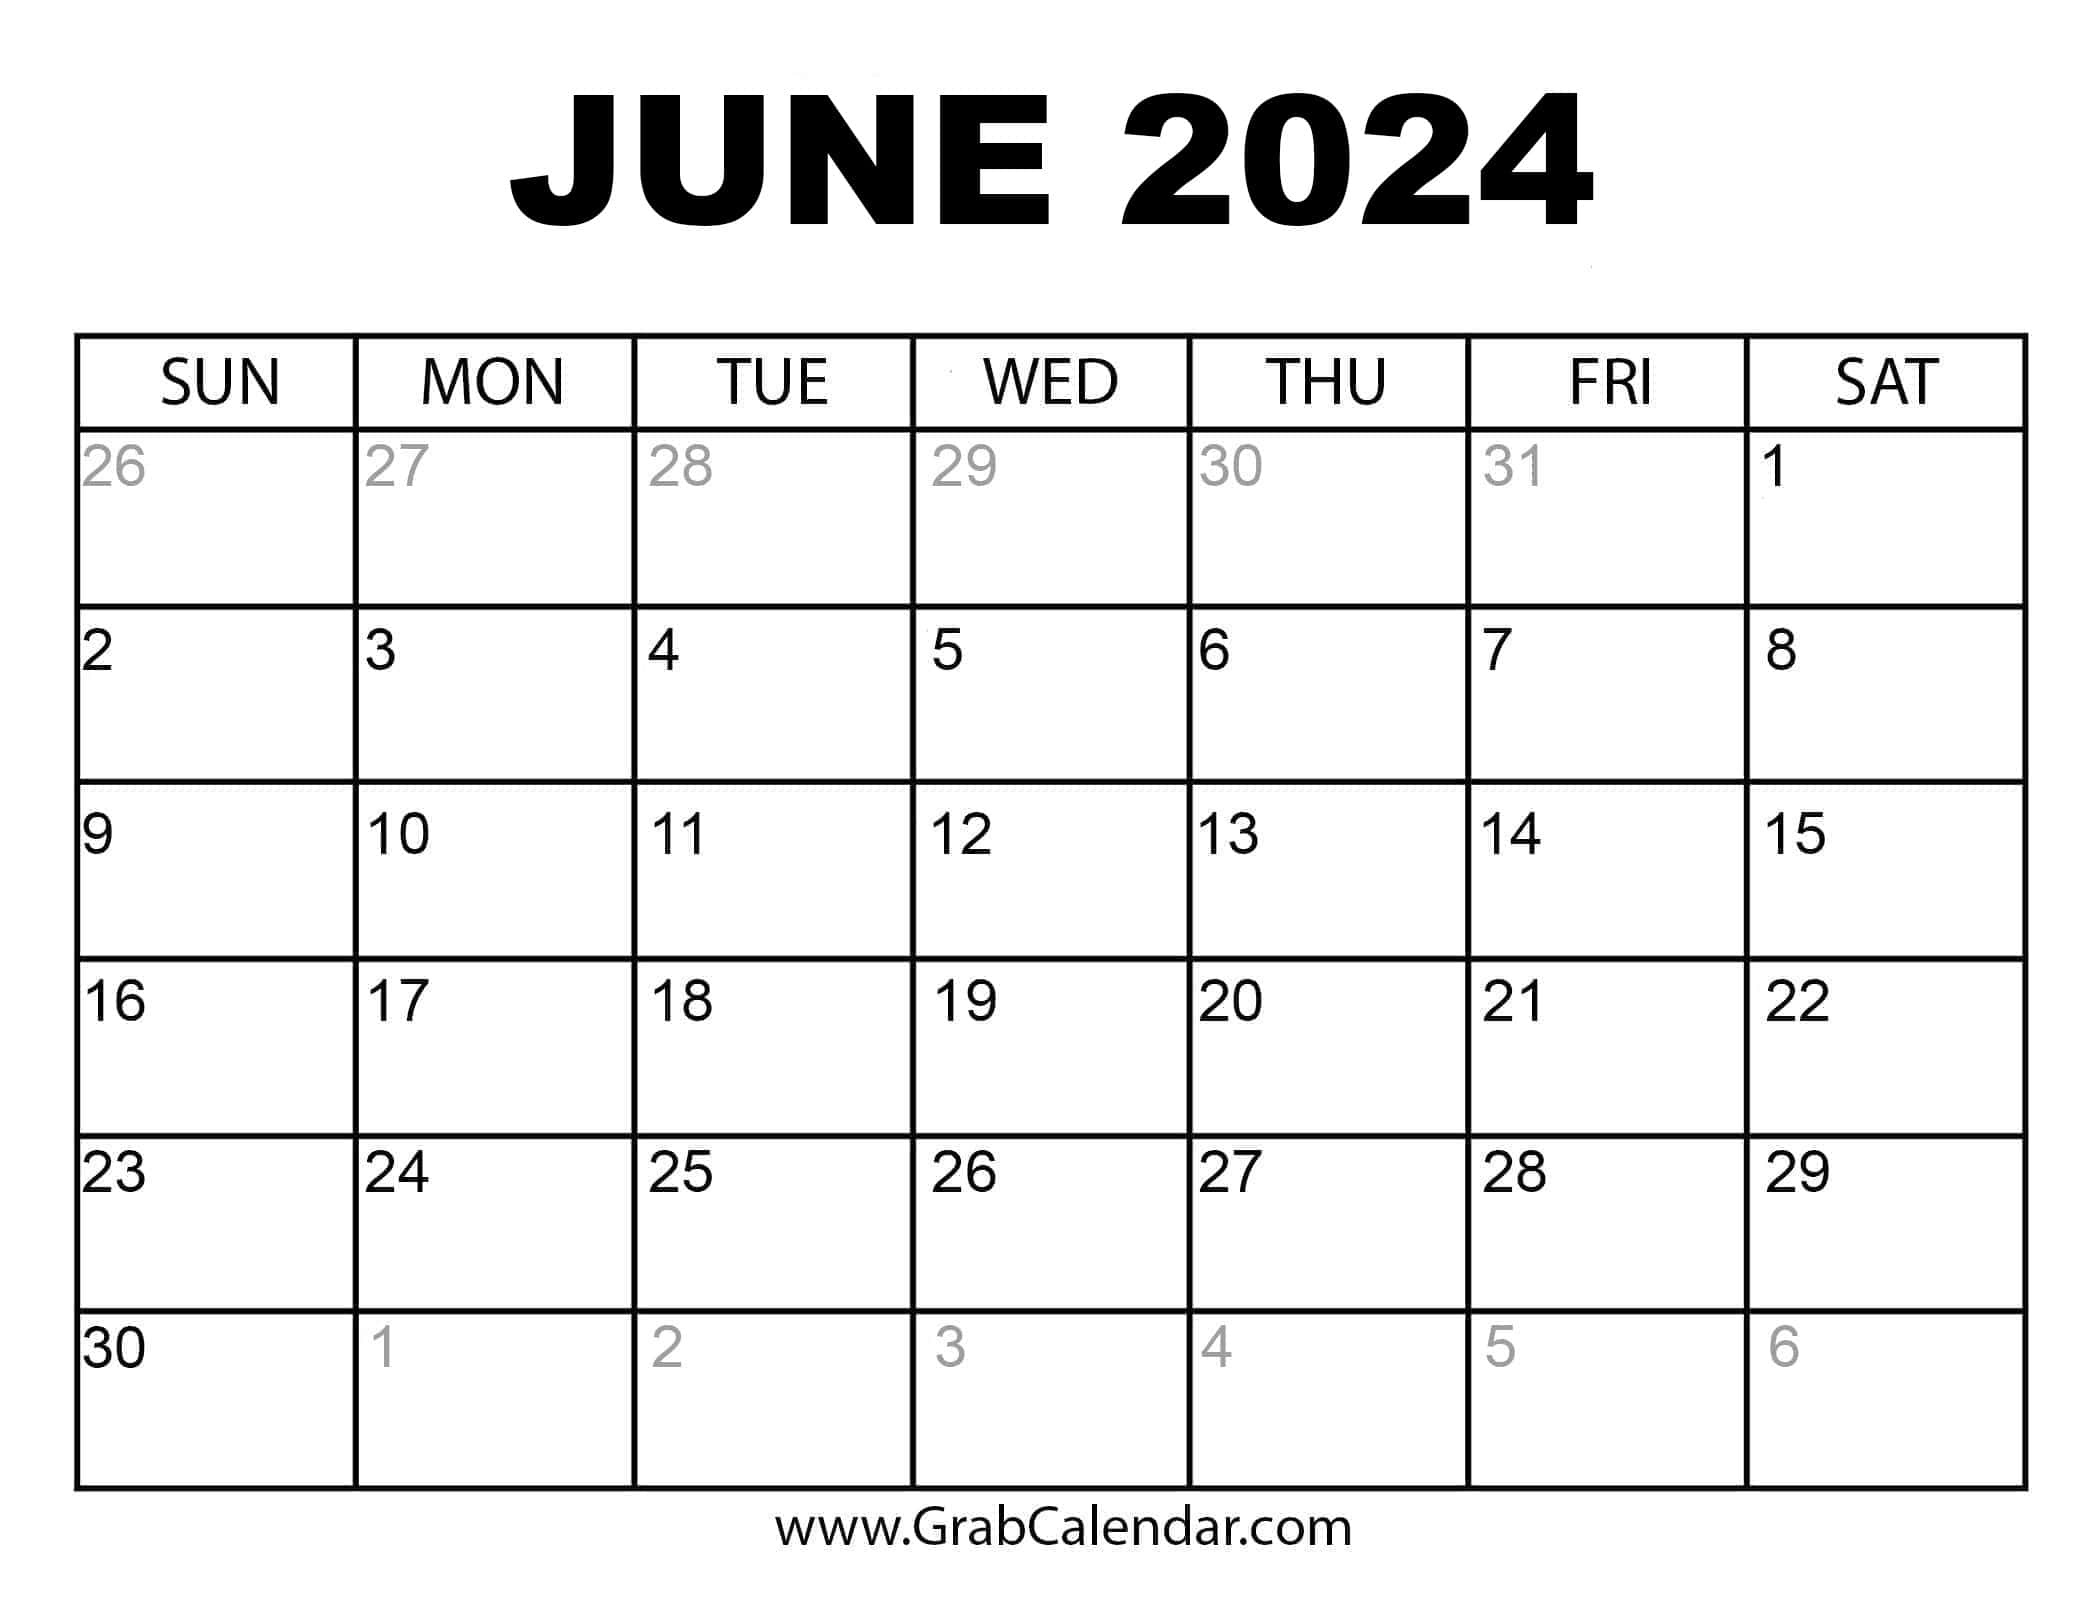 Printable June 2024 Calendar regarding June 2024 Calender